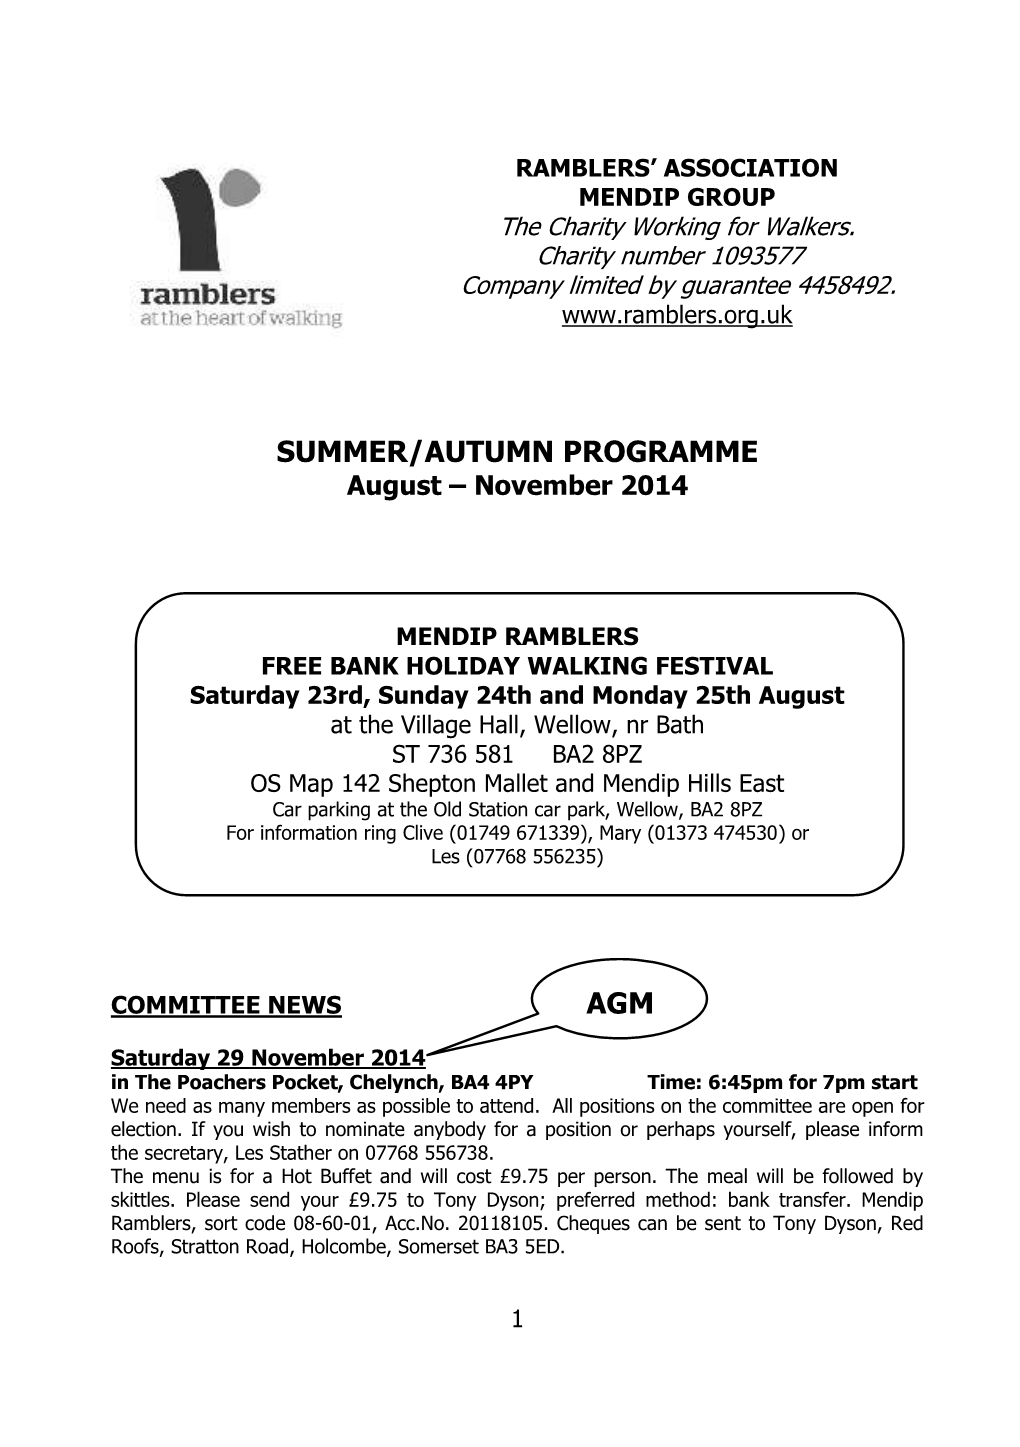 SUMMER/AUTUMN PROGRAMME August – November 2014